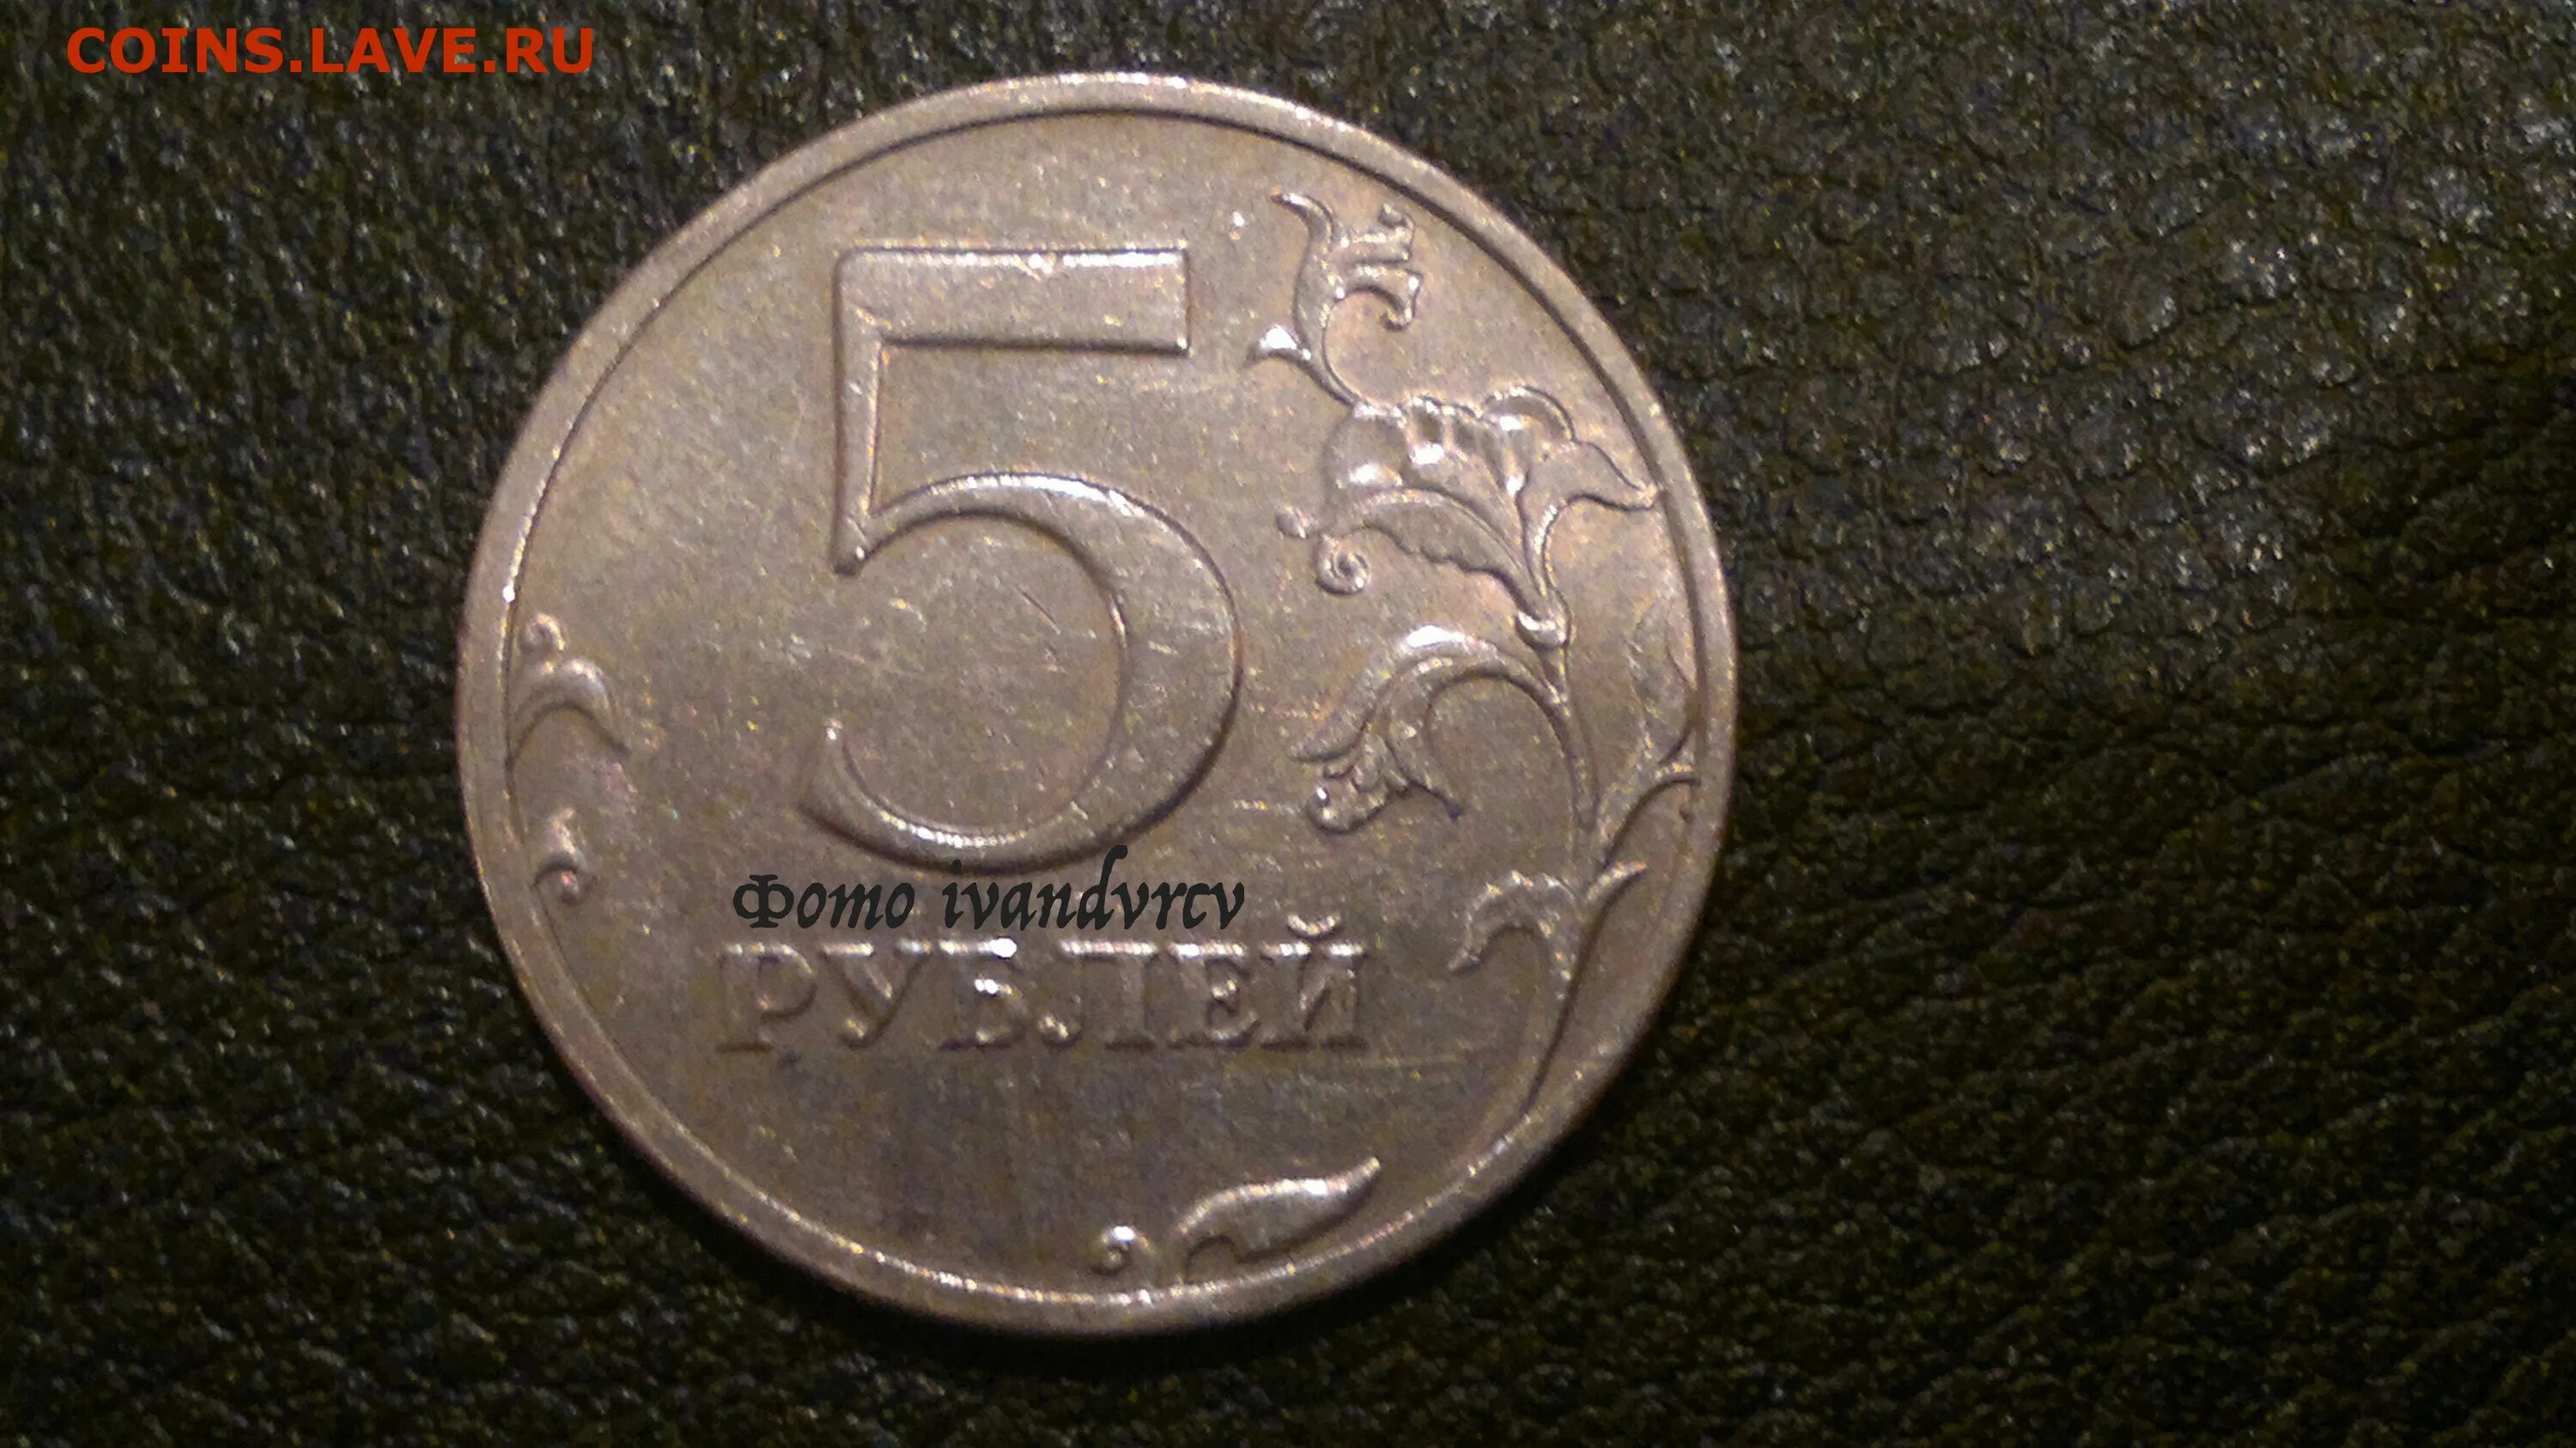 5 рублей 1997 разновидности. 5 Рублей 1997 СПМД. 5 Рублей 1997 СПМД шт 3. 5 Рублей 1997 СПМД штемпель 2.3. 5 Рублей 1997 штемпель 2.3 (с малой точкой).